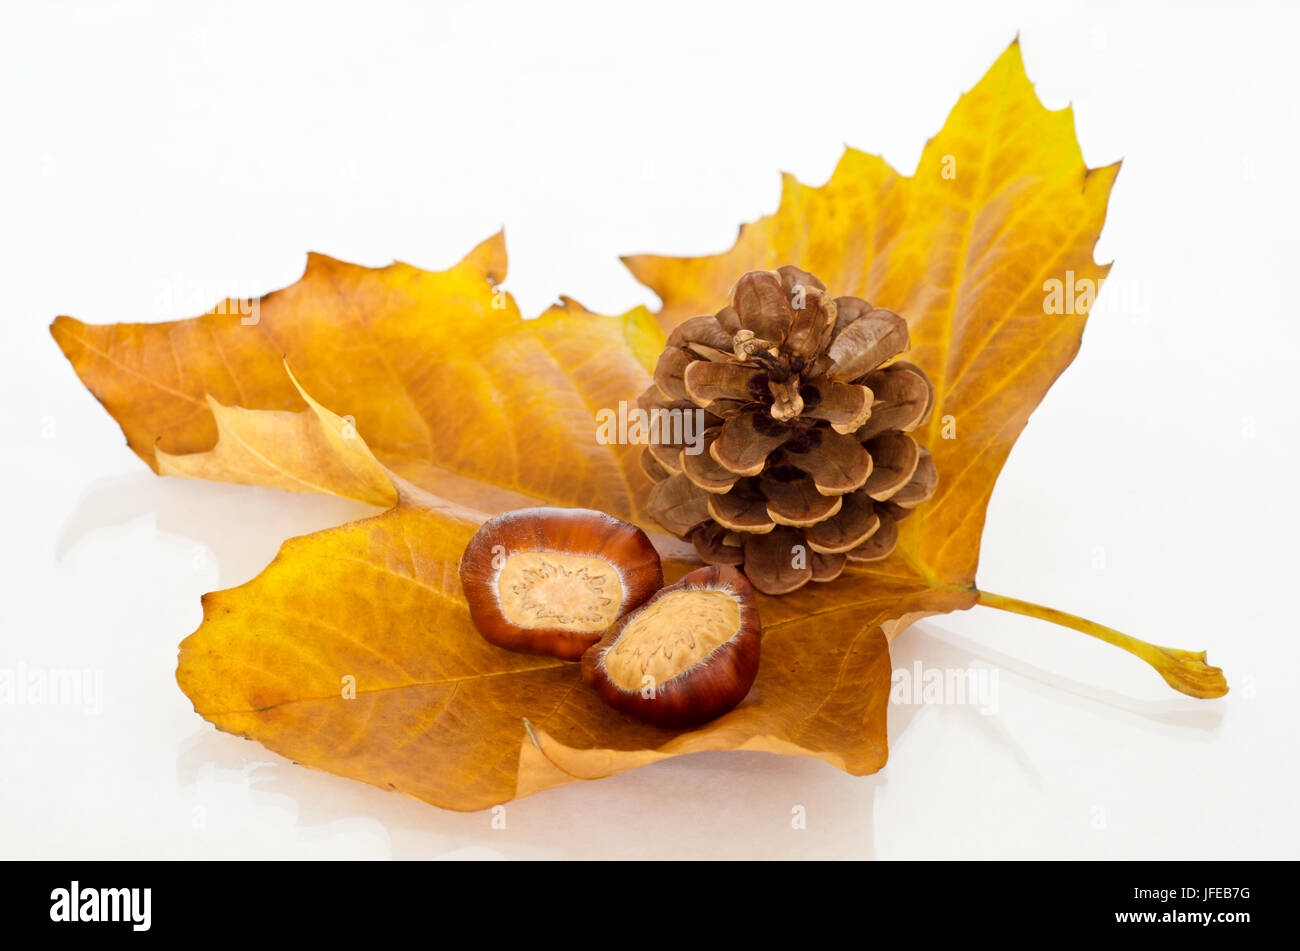 Ein einzelnes Ahorn Blatt im Herbst Schattierungen von Gold und Orange, nach oben und hält zwei Kastanien (Conkers) und eine Tanne Kegel.  Reflektierende Oberfläche werden Stockfoto